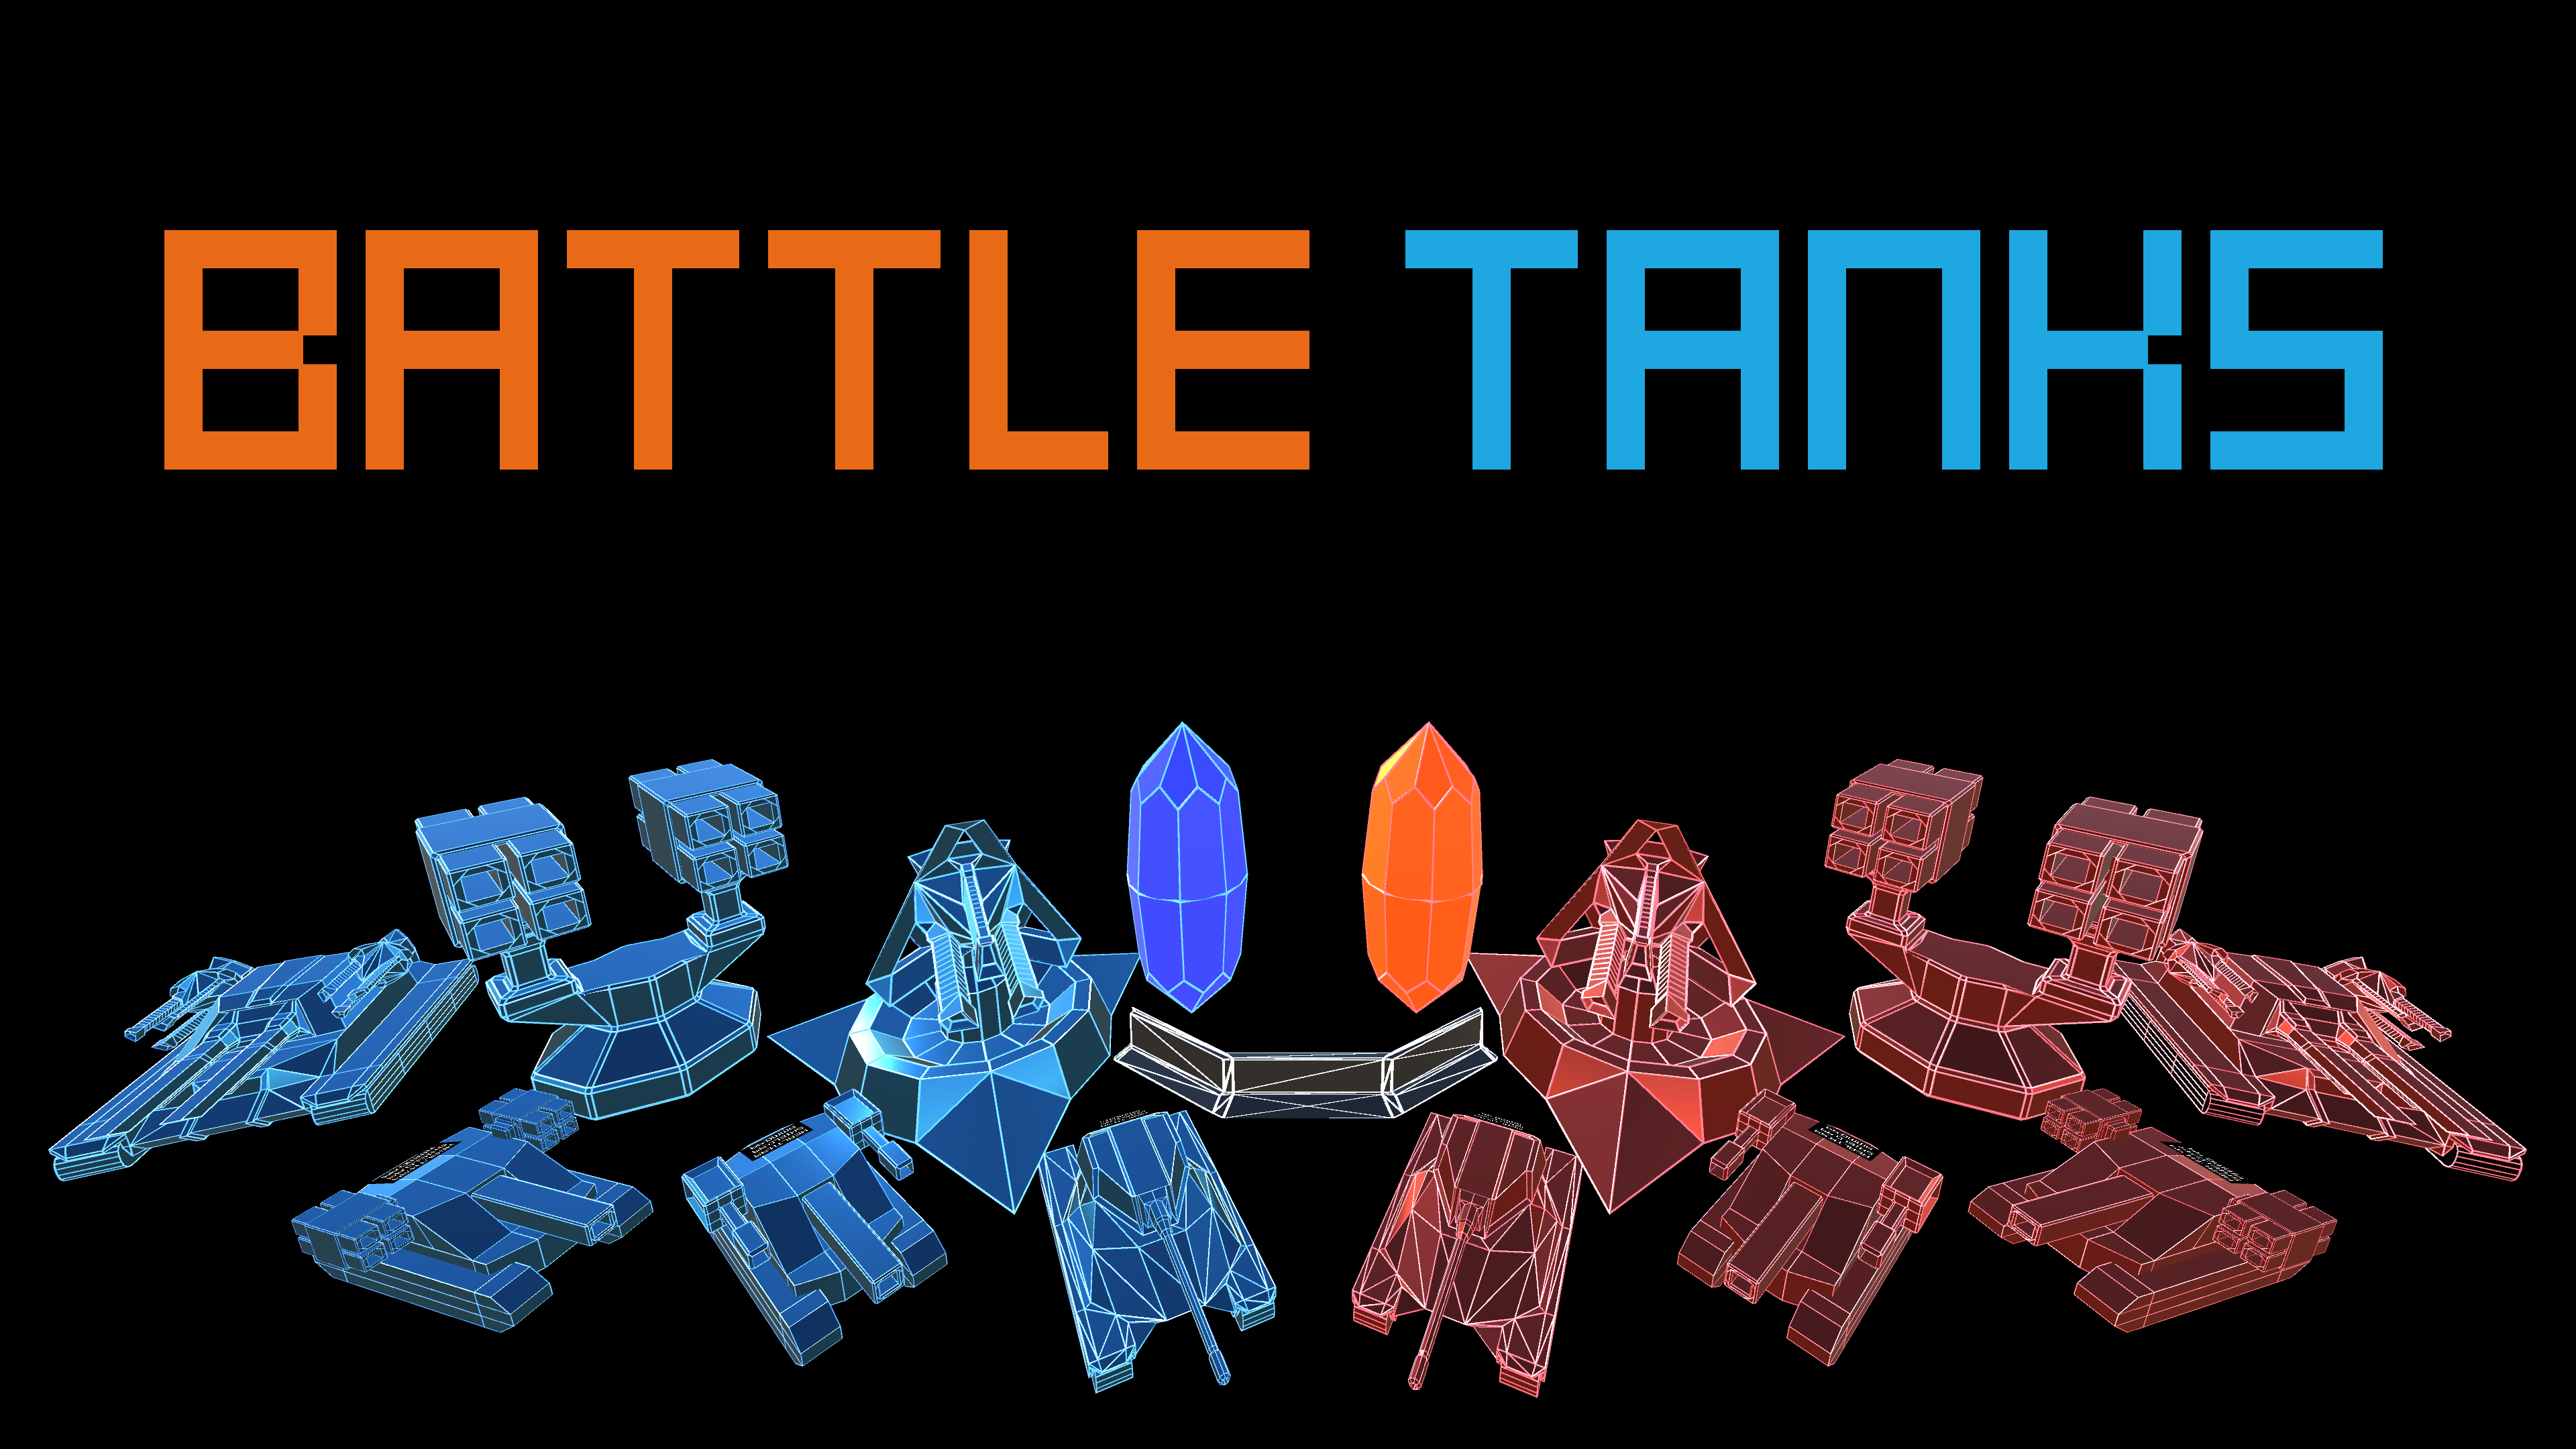 BattleTanks